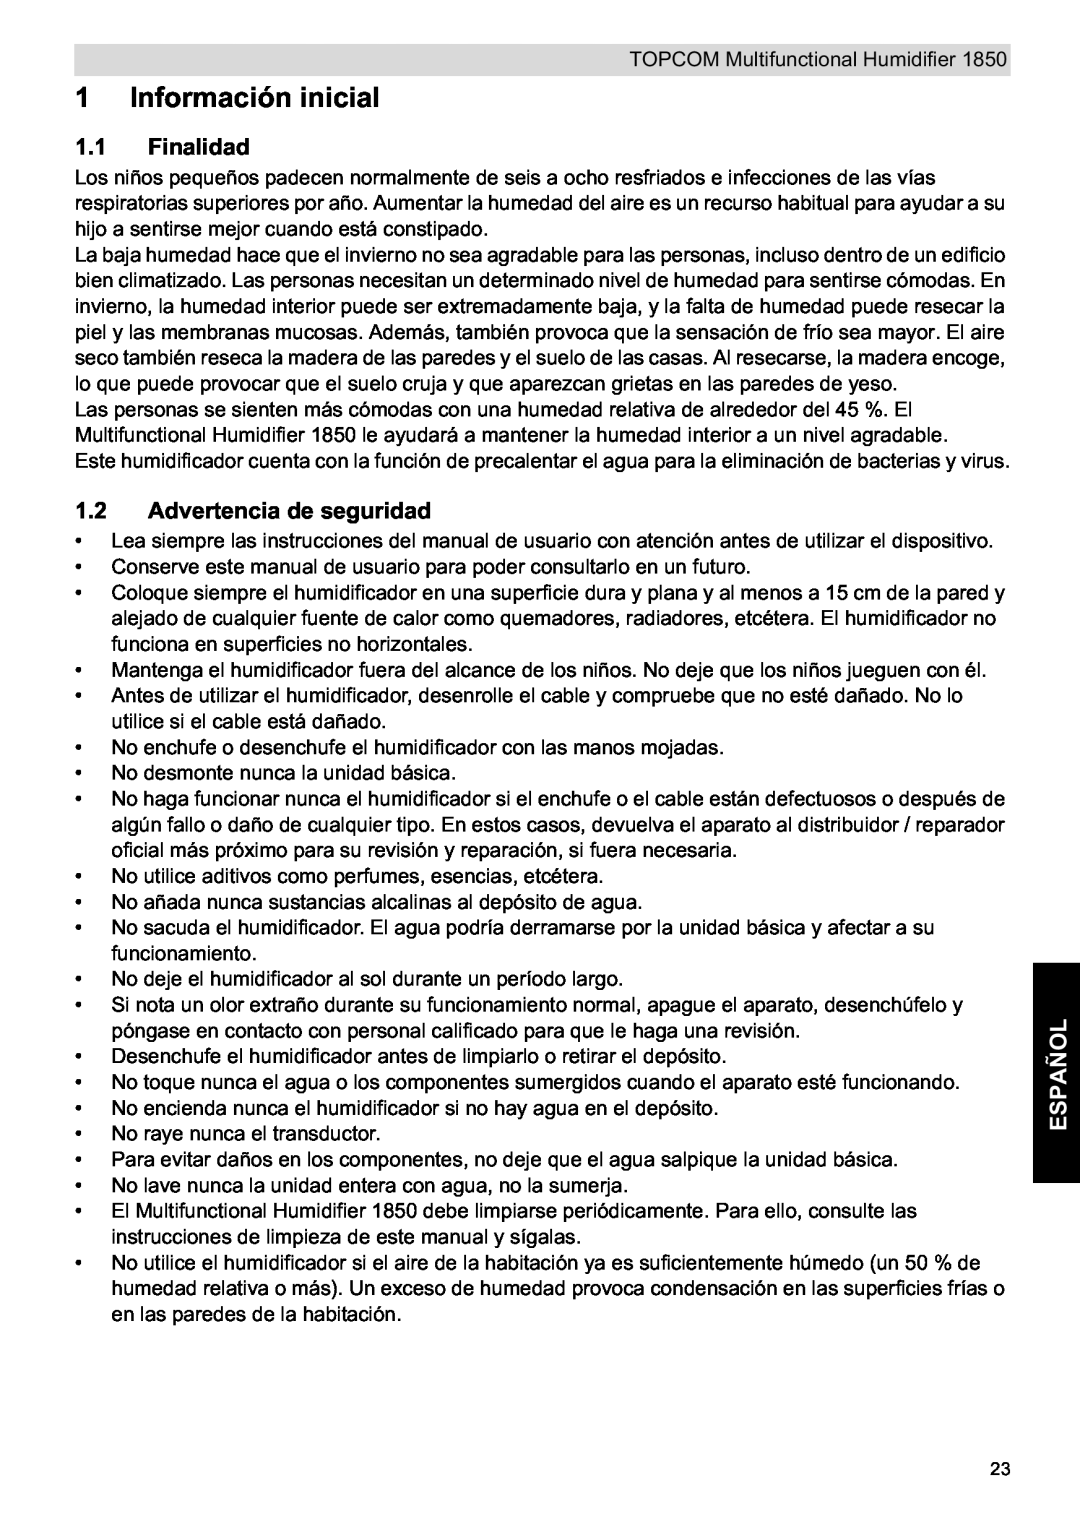 Topcom 1850 manual do utilizador Información inicial, Finalidad, Advertencia de seguridad, Español 